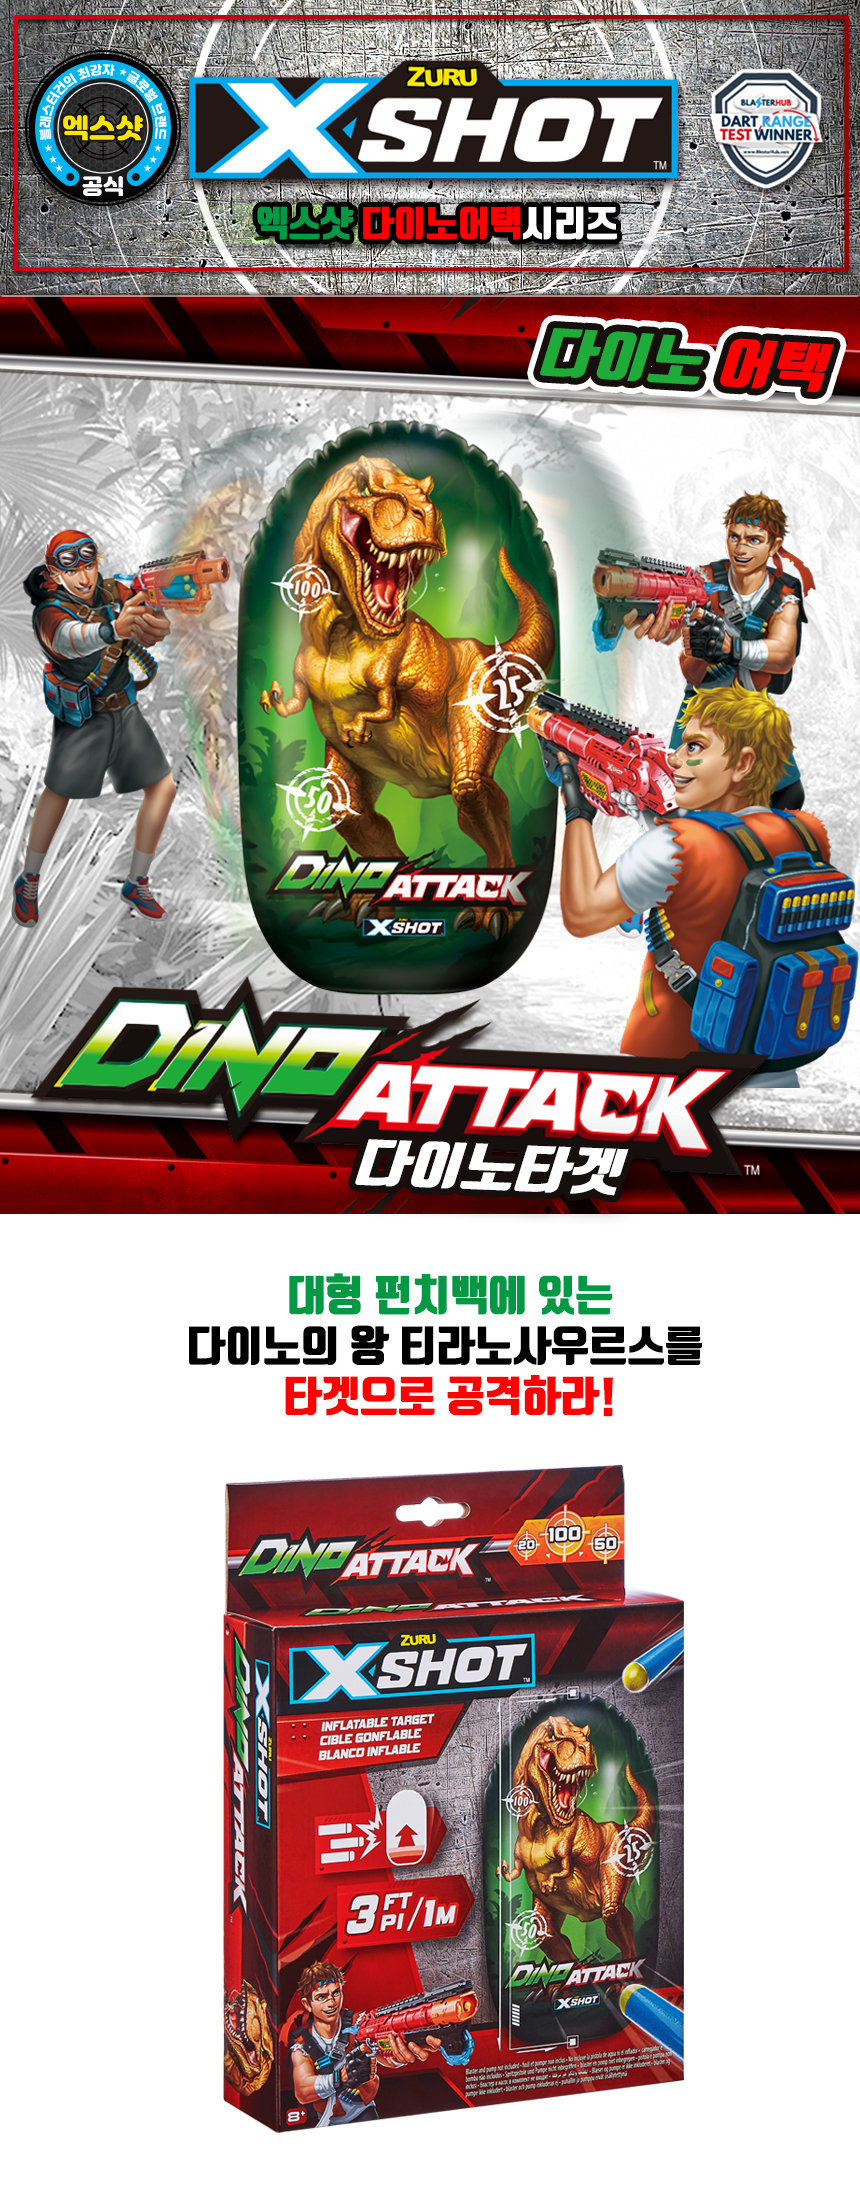 Dinoattack_Target1.jpg